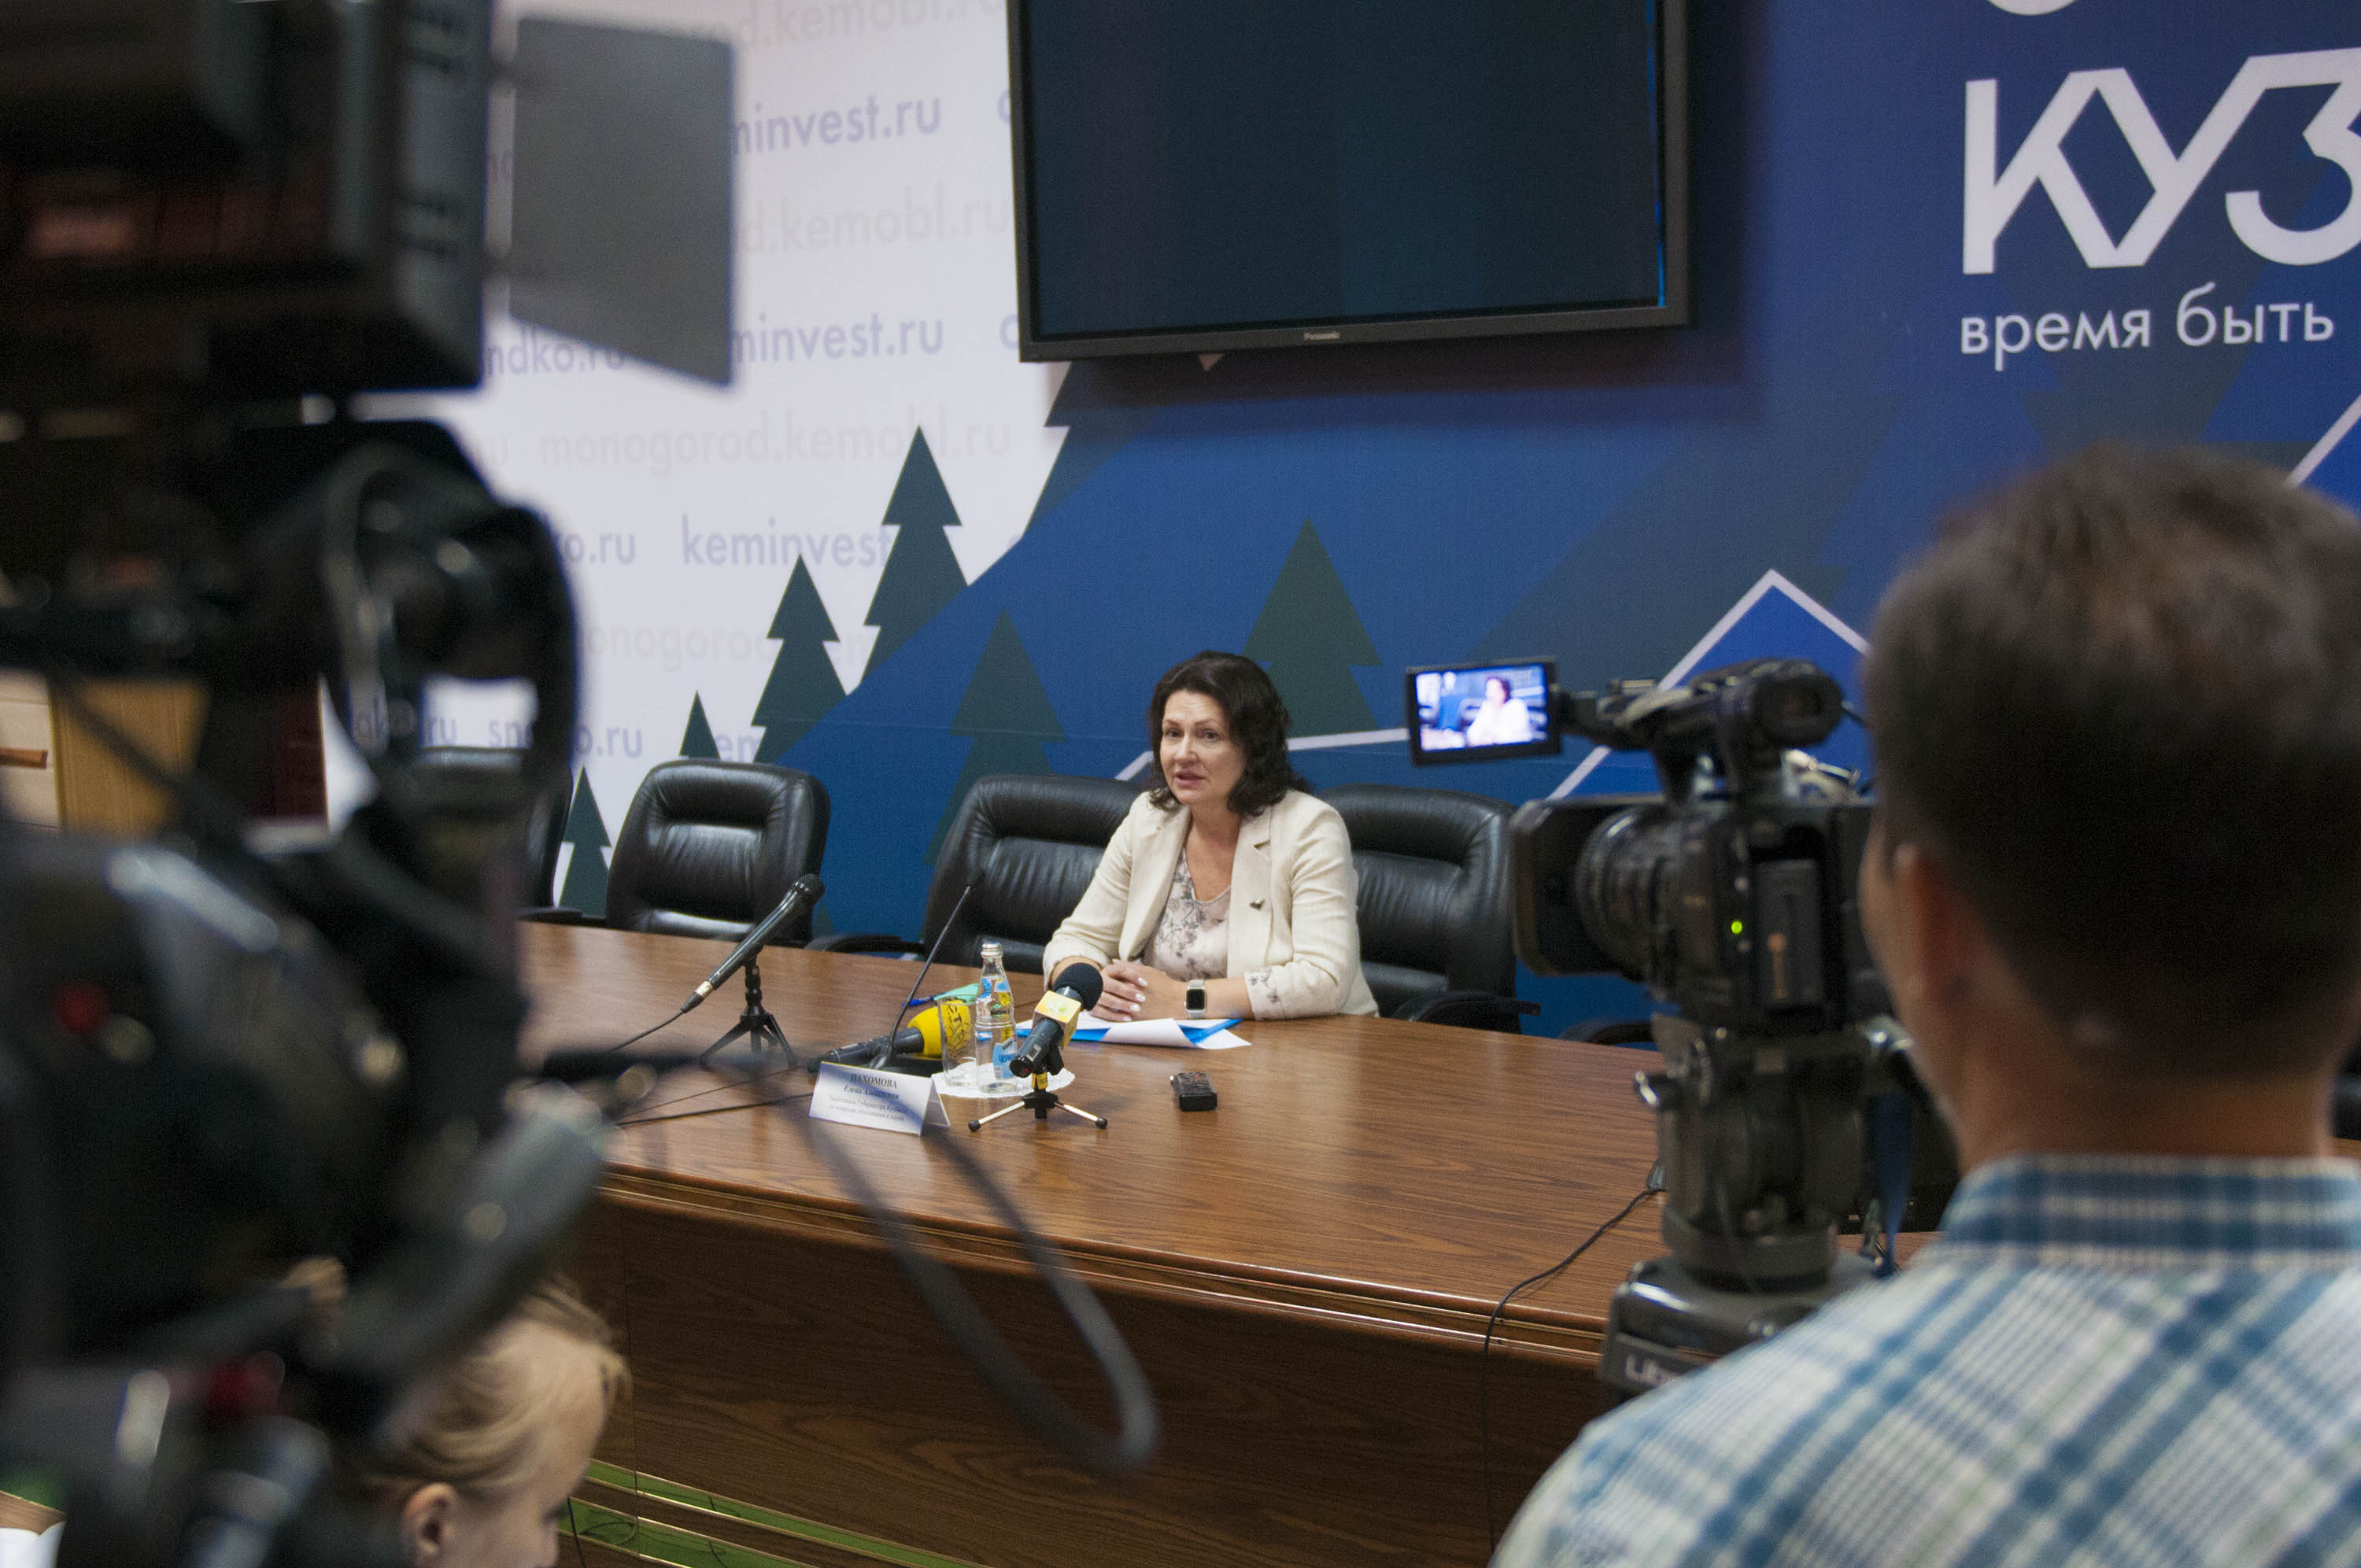 Заместитель губернатора Кузбасса Елена Пахомова: «Мы гордимся достижениями, которые происходят в сфере образования»